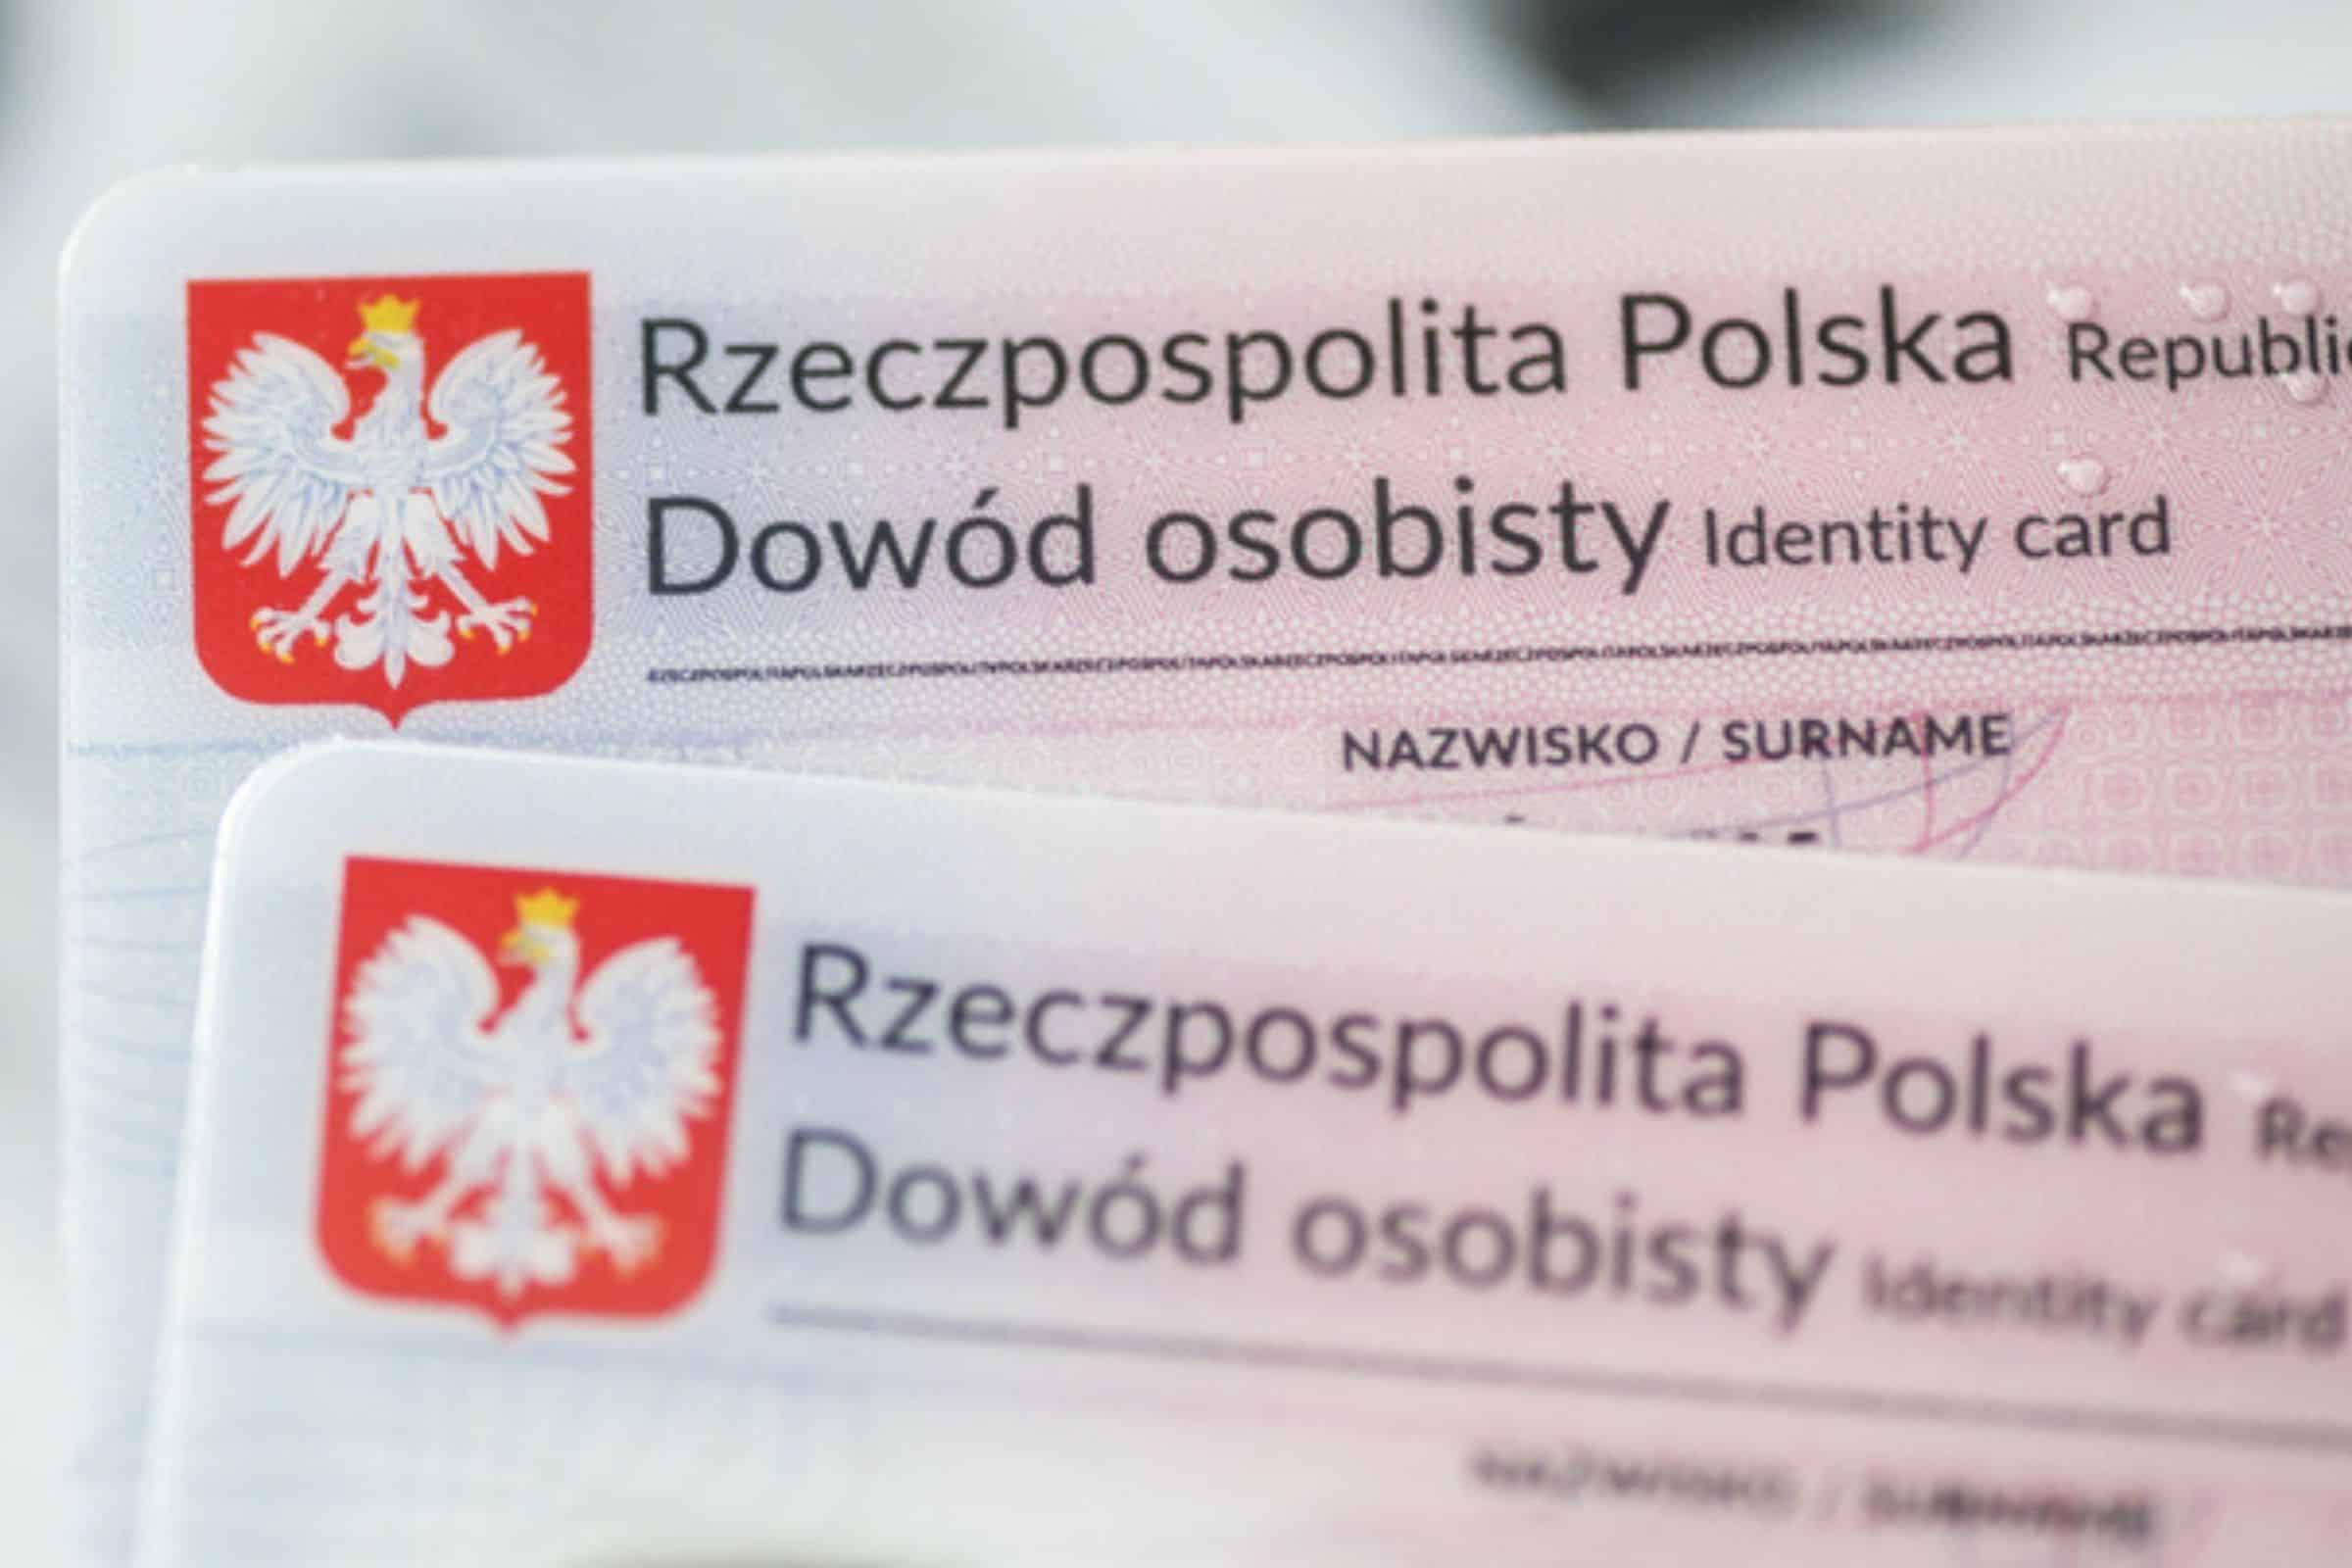 Zmiana w Dowodach Osobistych w Polsce od 2 sierpnia 2021